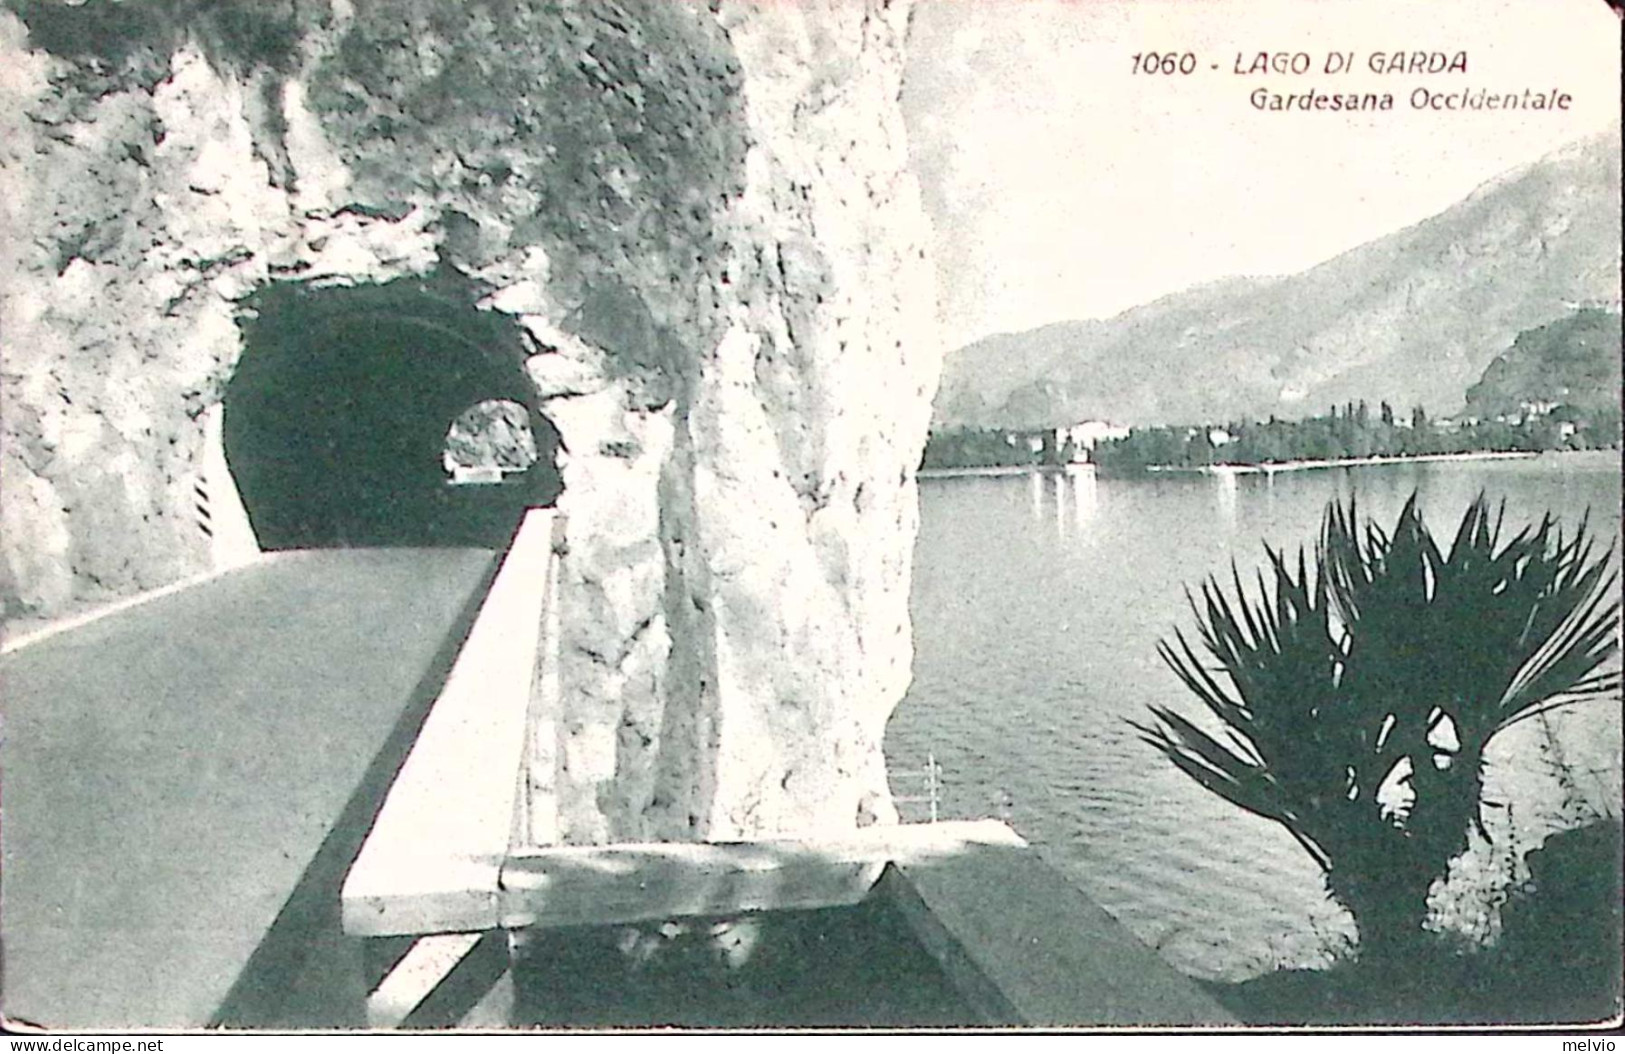 1936-LAGO DI GARDA Gardesana Occidentale, Viaggiata - Brescia